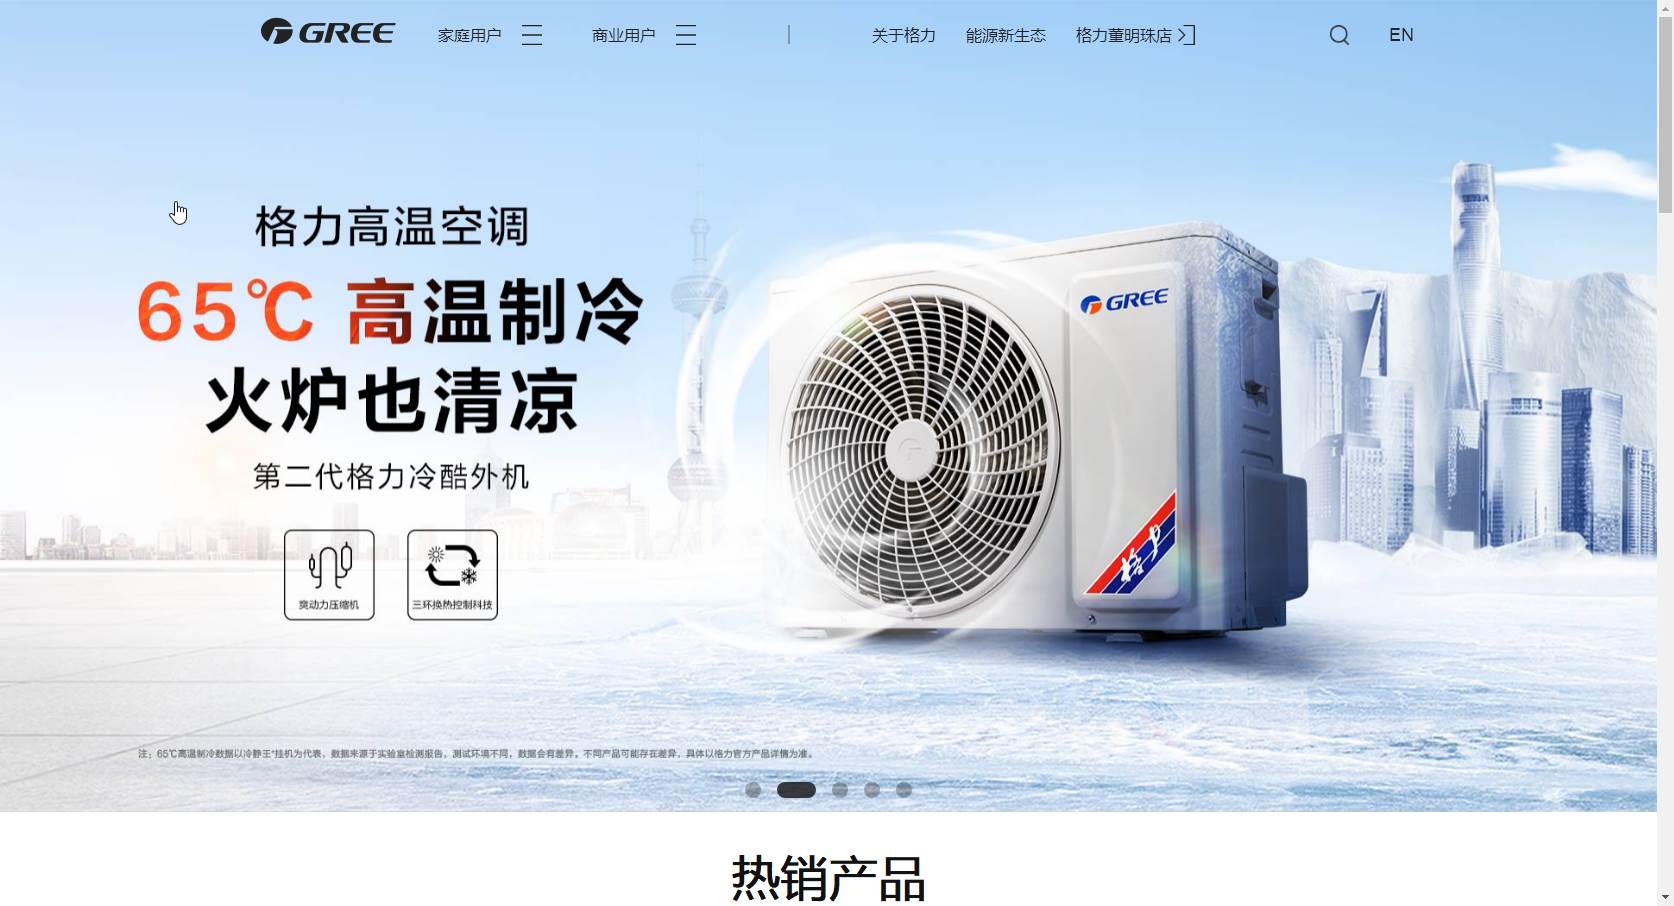 珠海格力电器股份有限公司网站